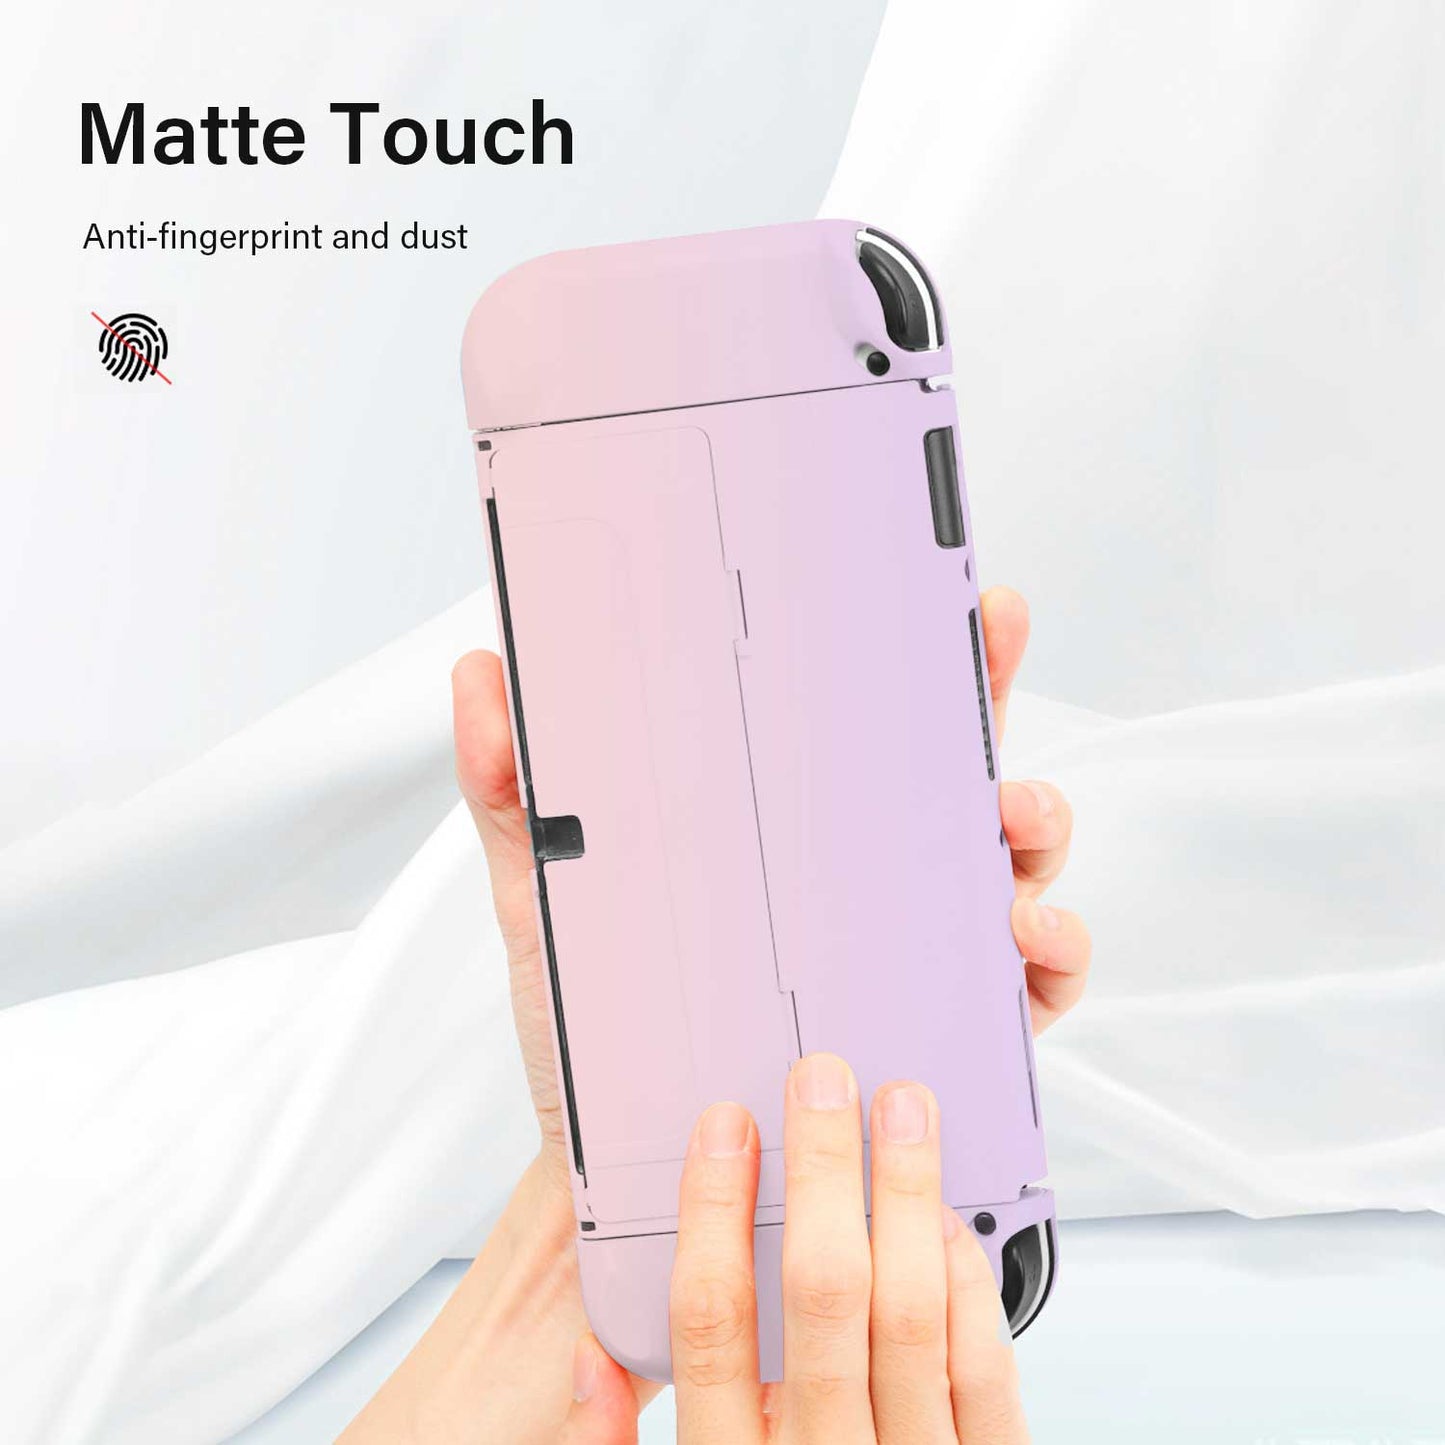 Tough On Nintendo Switch Case OLED 2021 Hard Matte Purple/Pink - Toughonstore